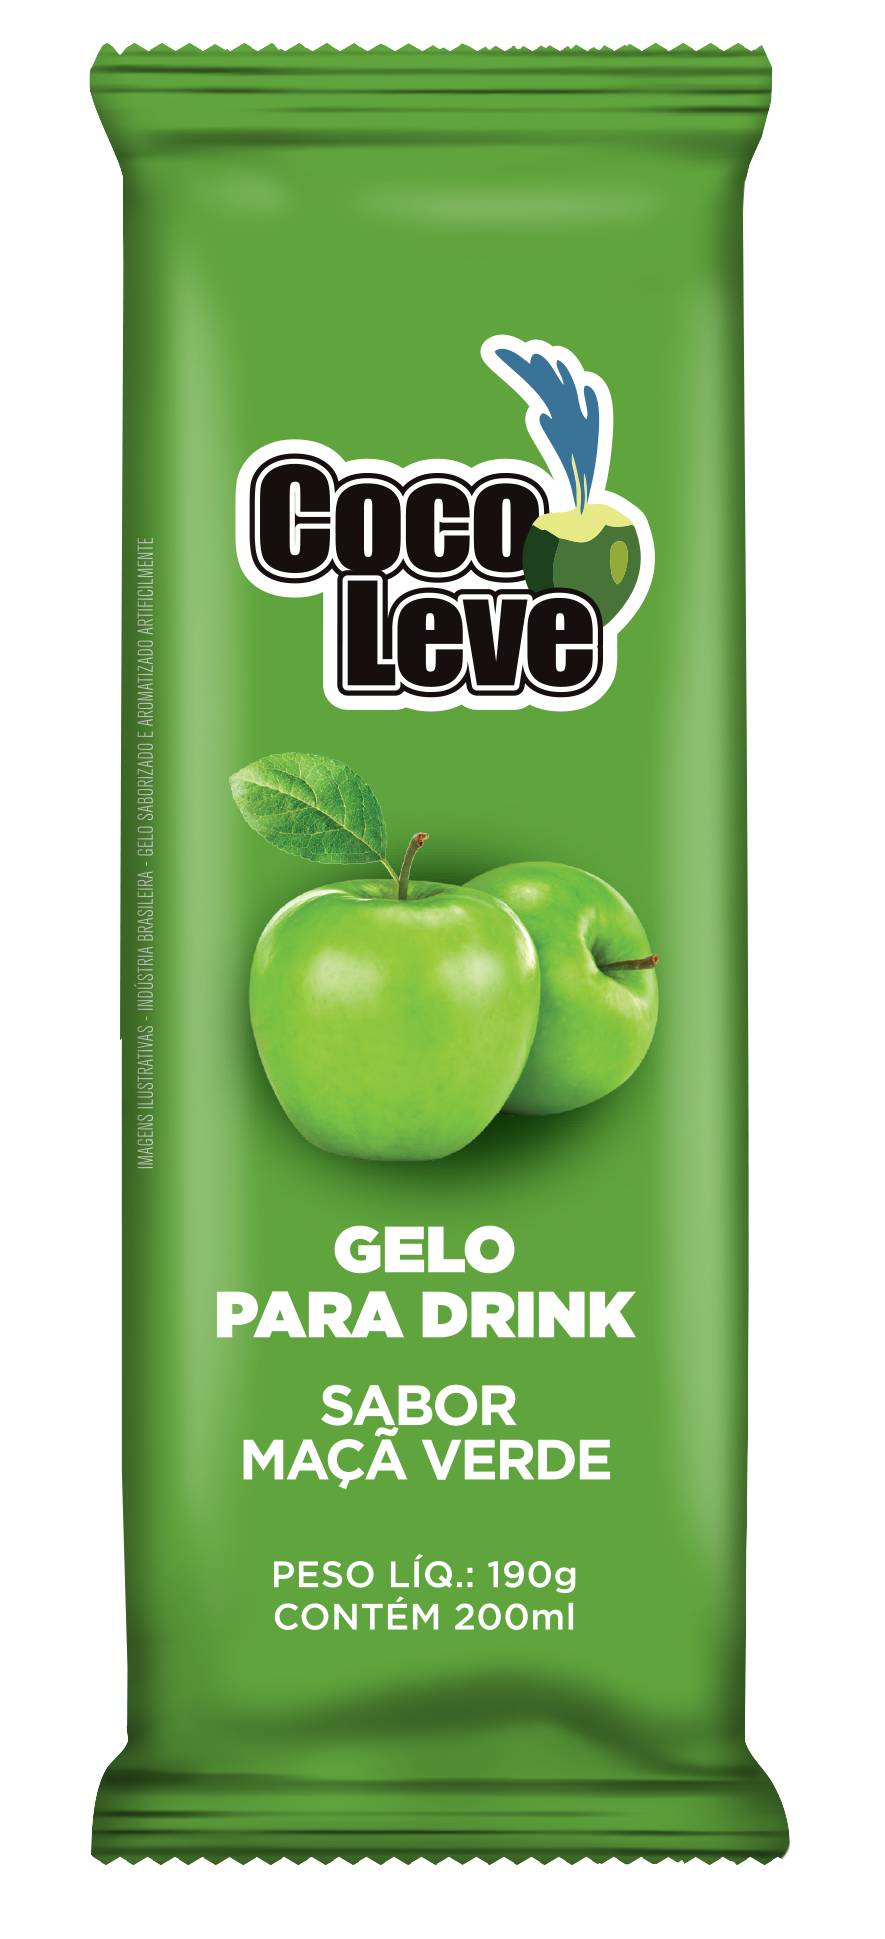 Coco leve gelo para drink sabor maçã verde